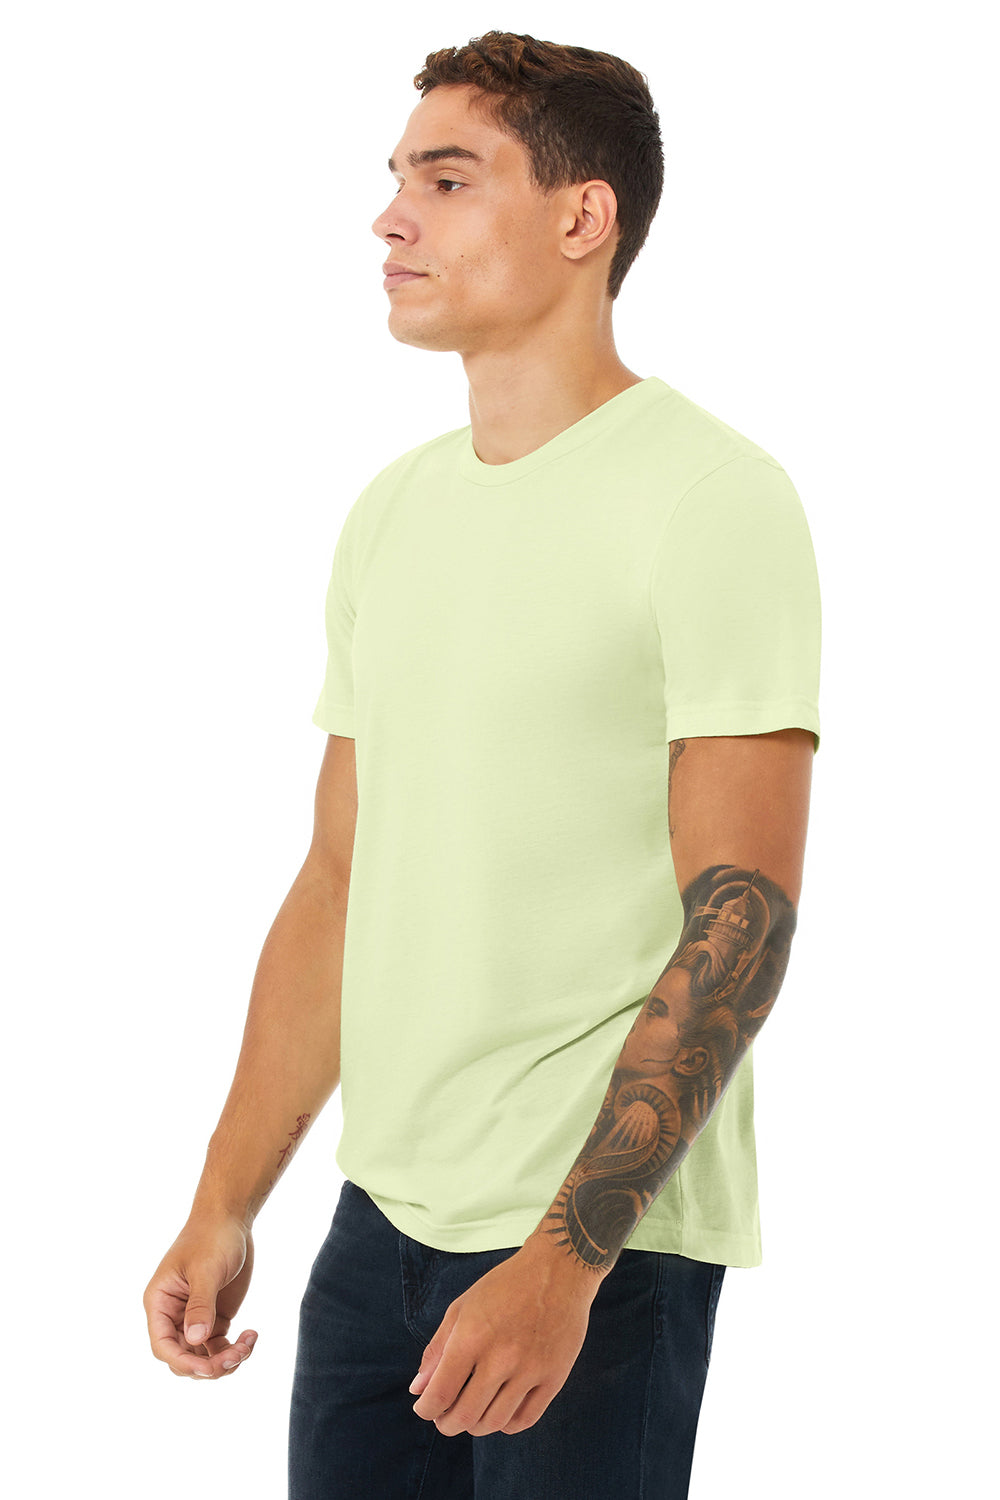 Bella + Canvas BC3413/3413C/3413 Mens Short Sleeve Crewneck T-Shirt Spring Green Model 3Q